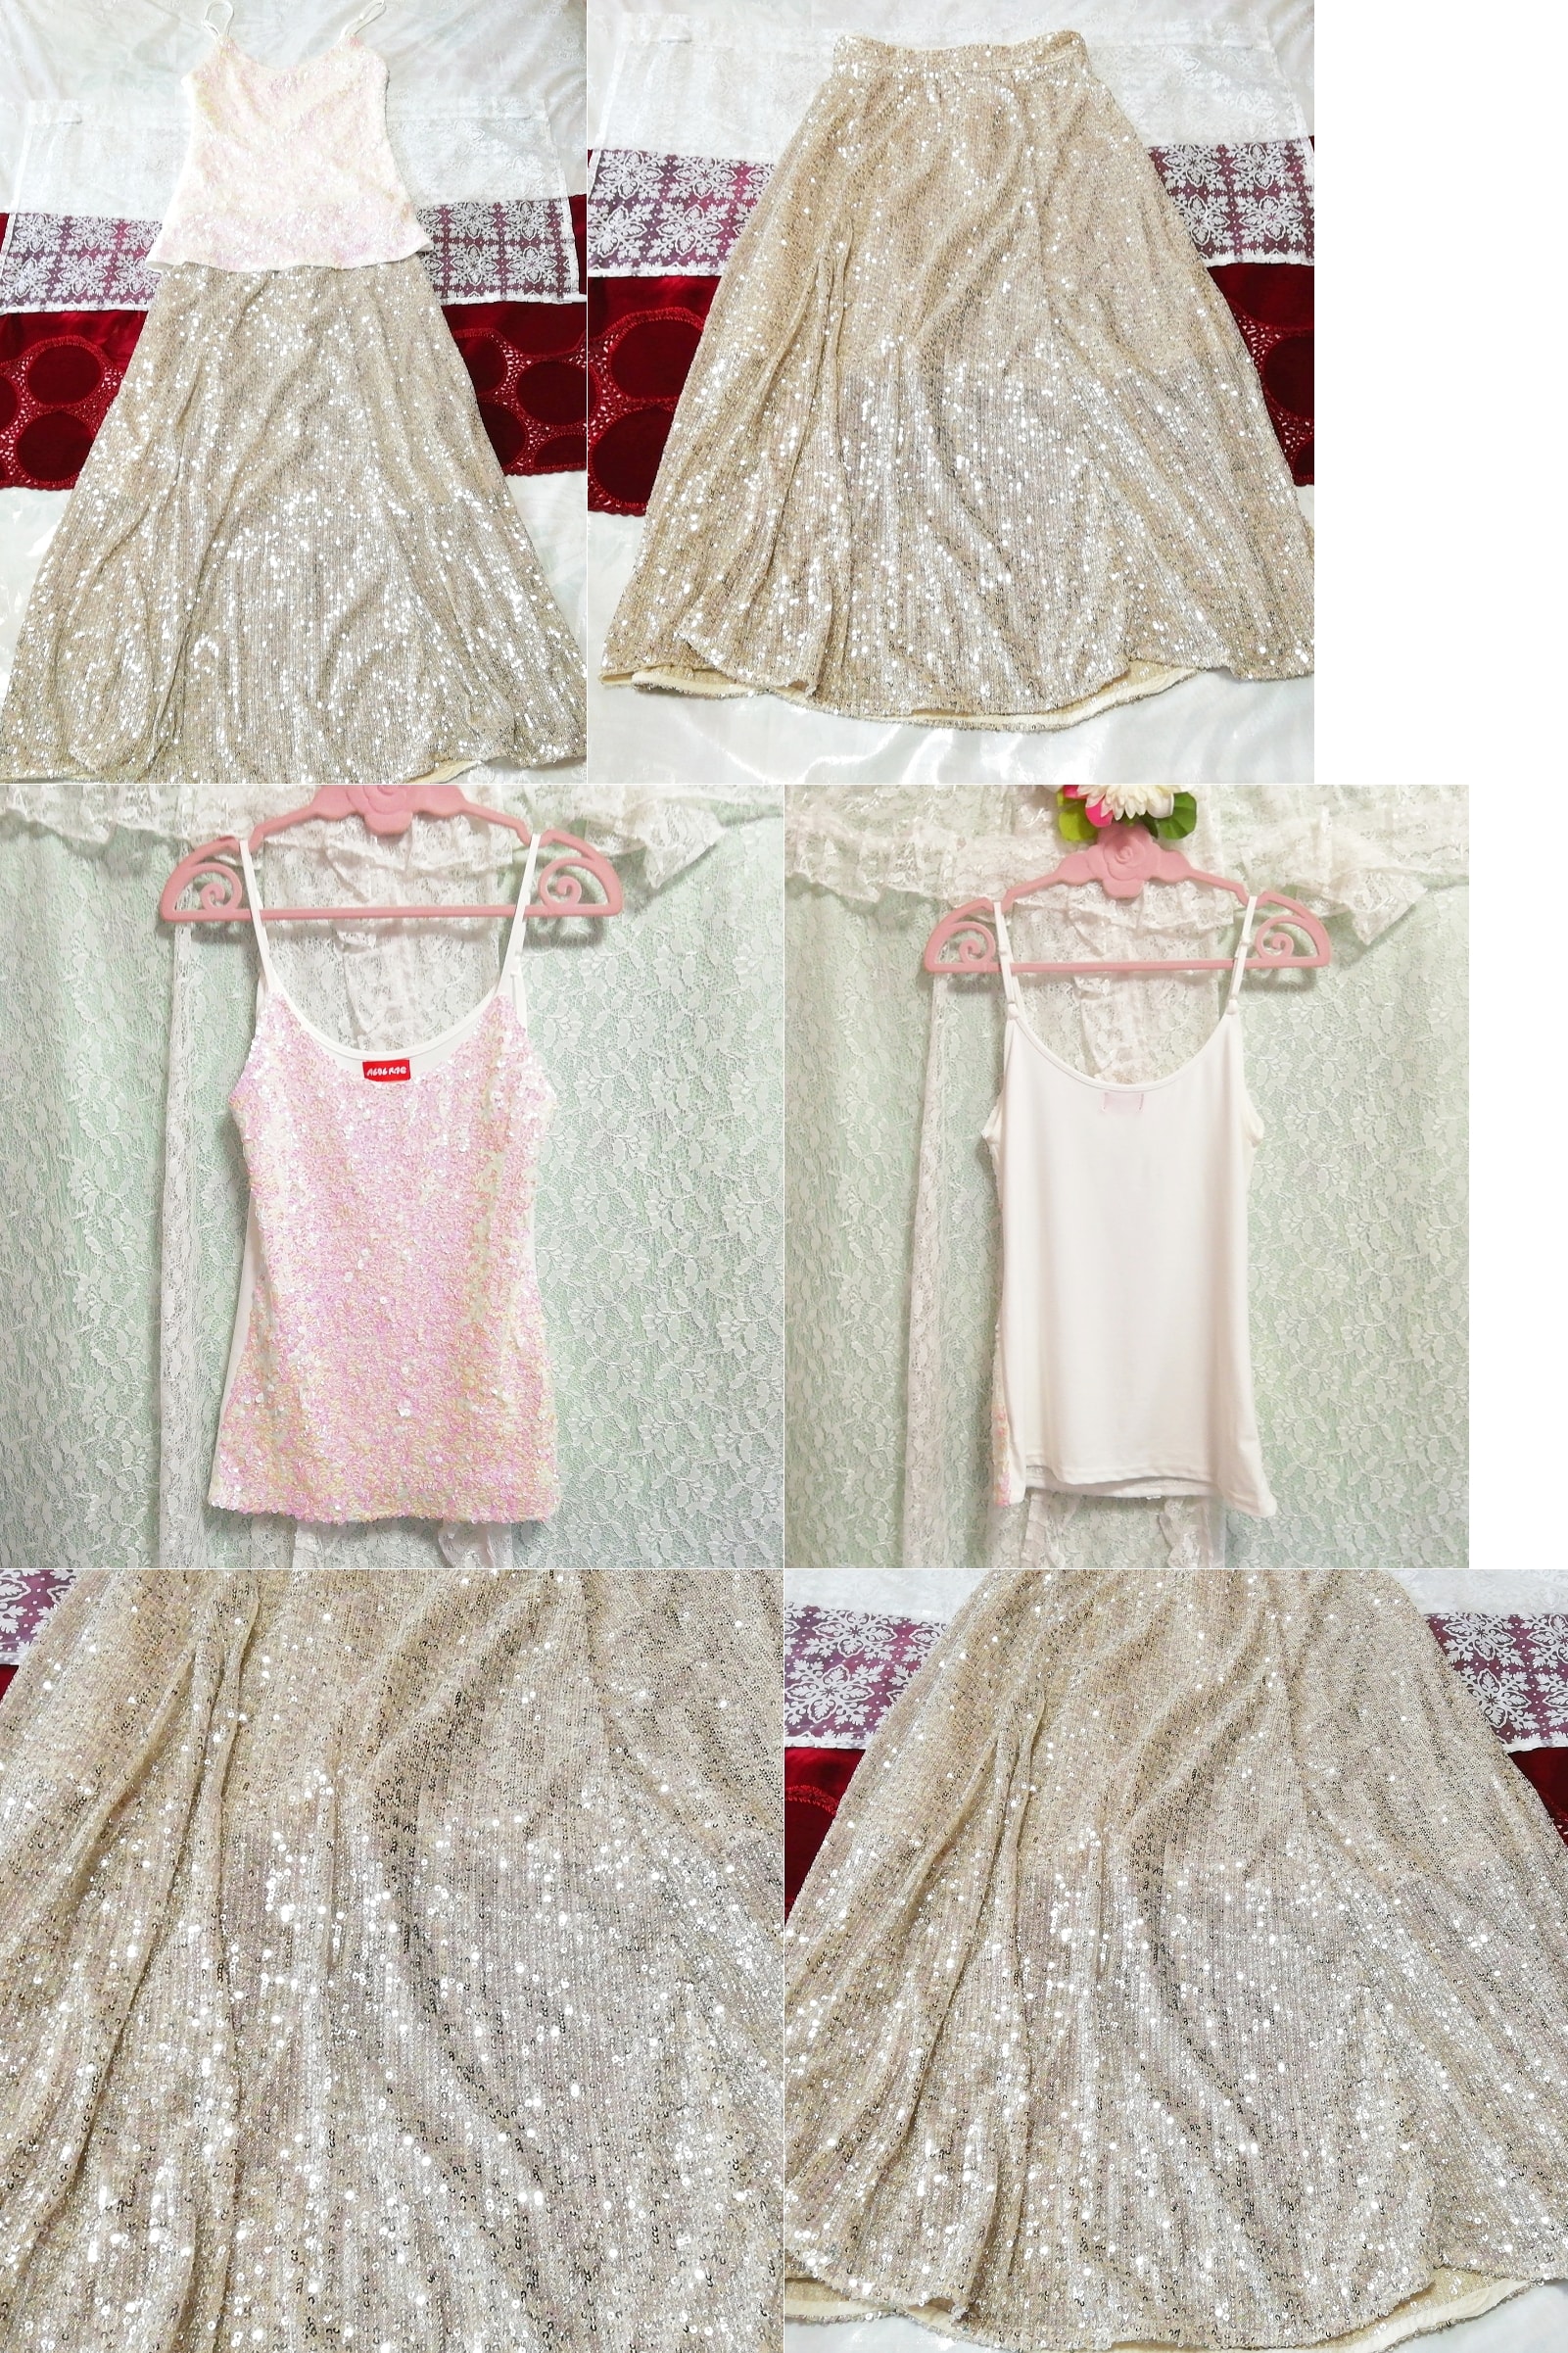 Blanc rose paillettes camisole déshabillé chemise de nuit lin jupe longue robe 2P, mode, mode féminine, vêtement de nuit, pyjamas